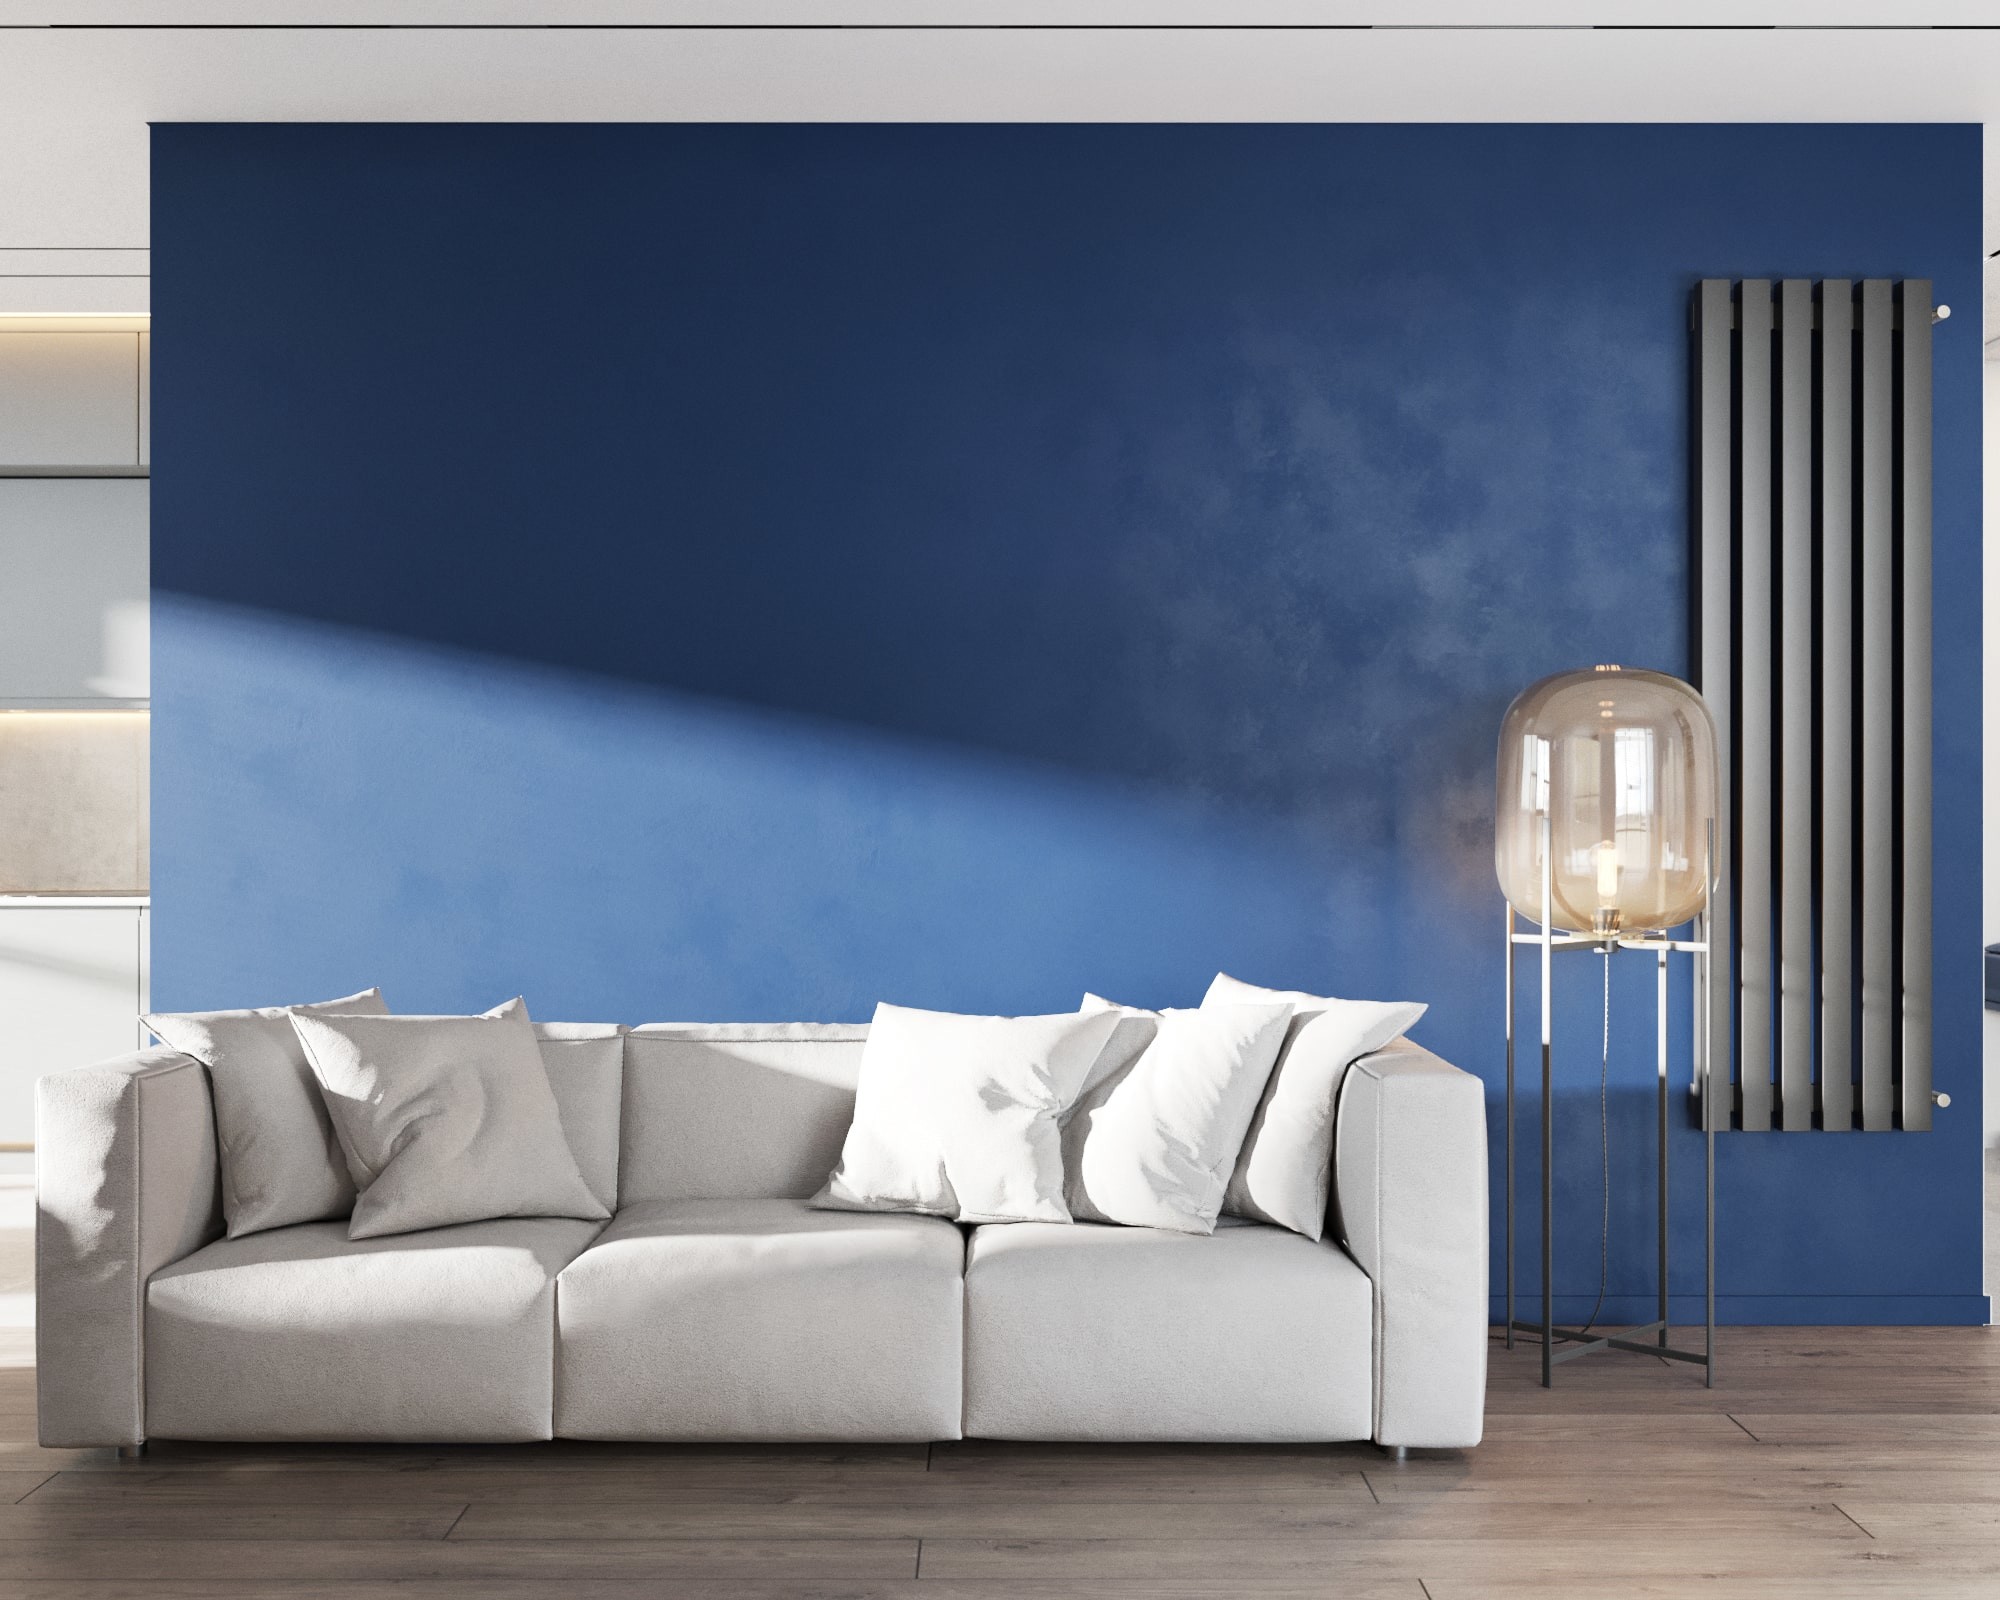 Білий диван на фоні синьої стіни